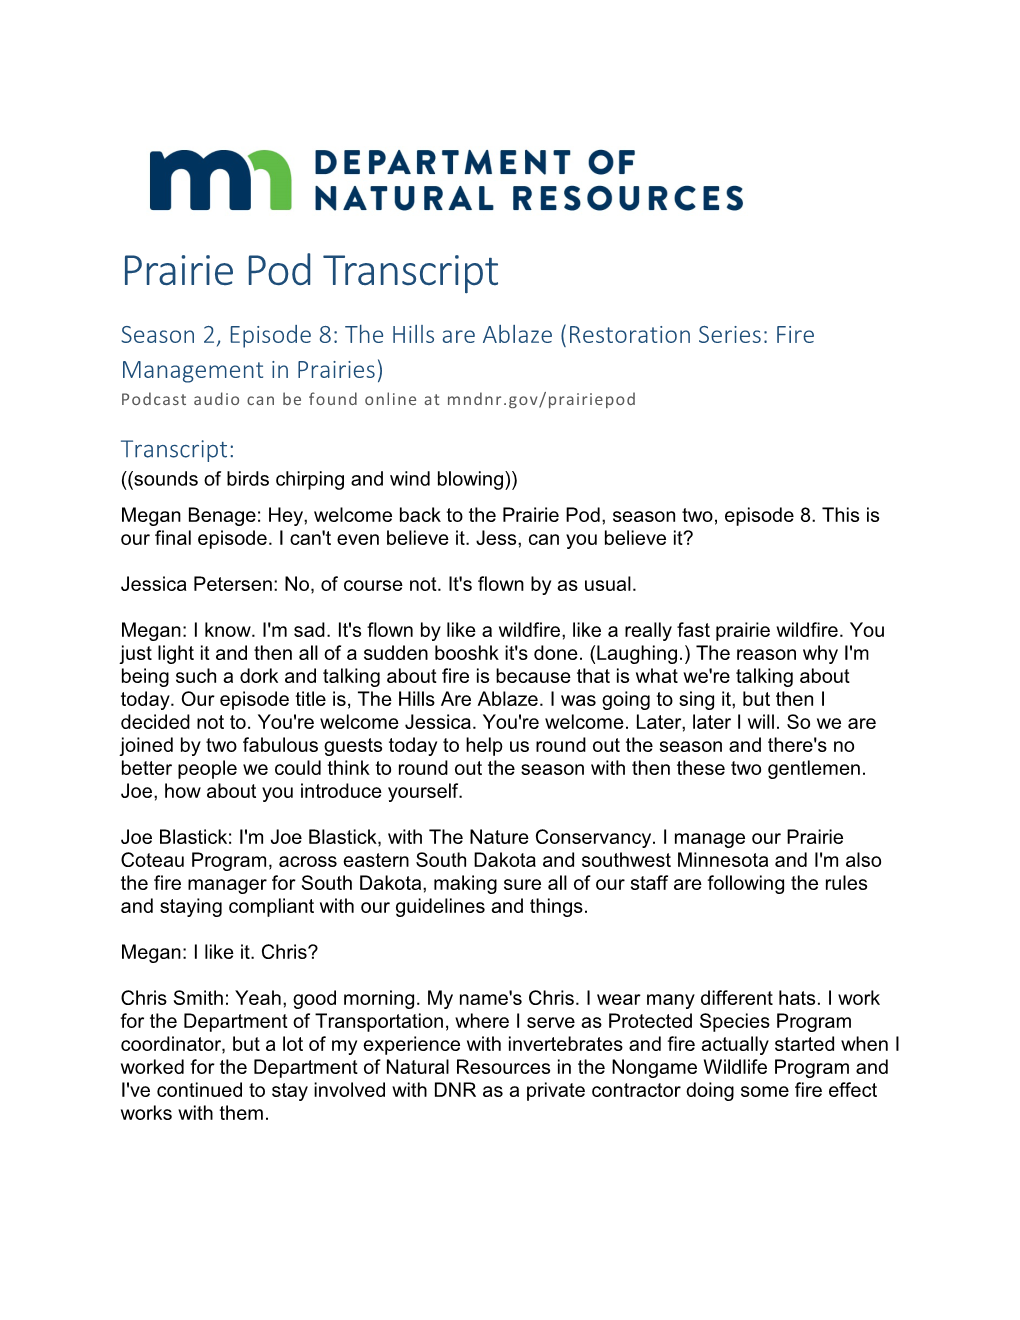 The Hills Are Ablaze (Restoration Series: Fire Management in Prairies) Podcast Audio Can Be Found Online at Mndnr.Gov/Prairiepod